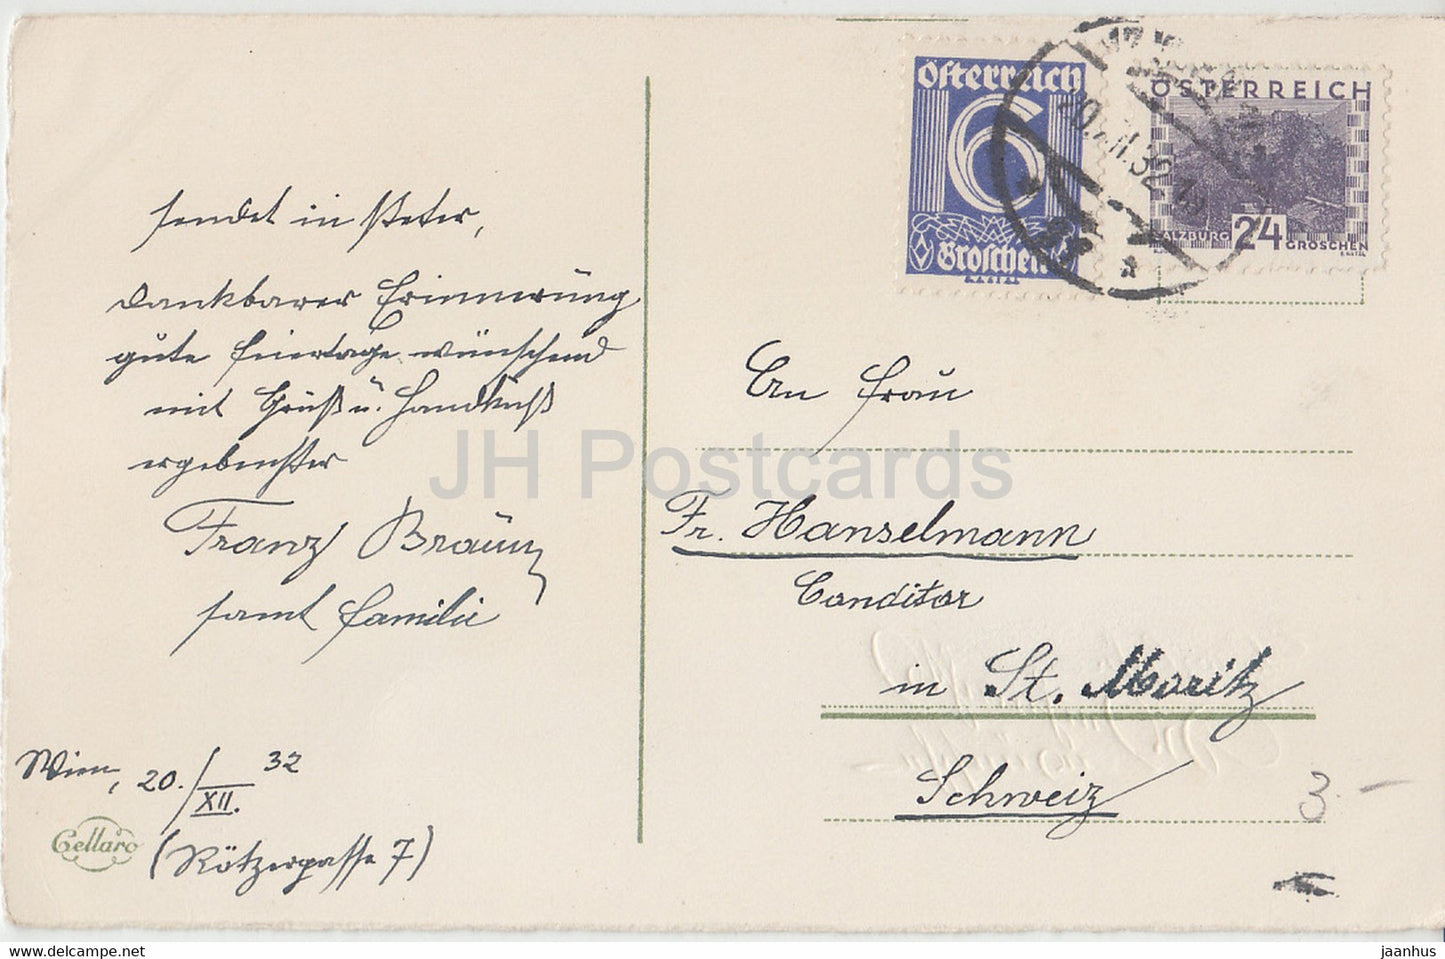 Weihnachtsgrußkarte - Herzliche Weihnachtswünsche - Tannenzapfen - Cellaro - alte Postkarte - 1932 - Deutschland - gebraucht